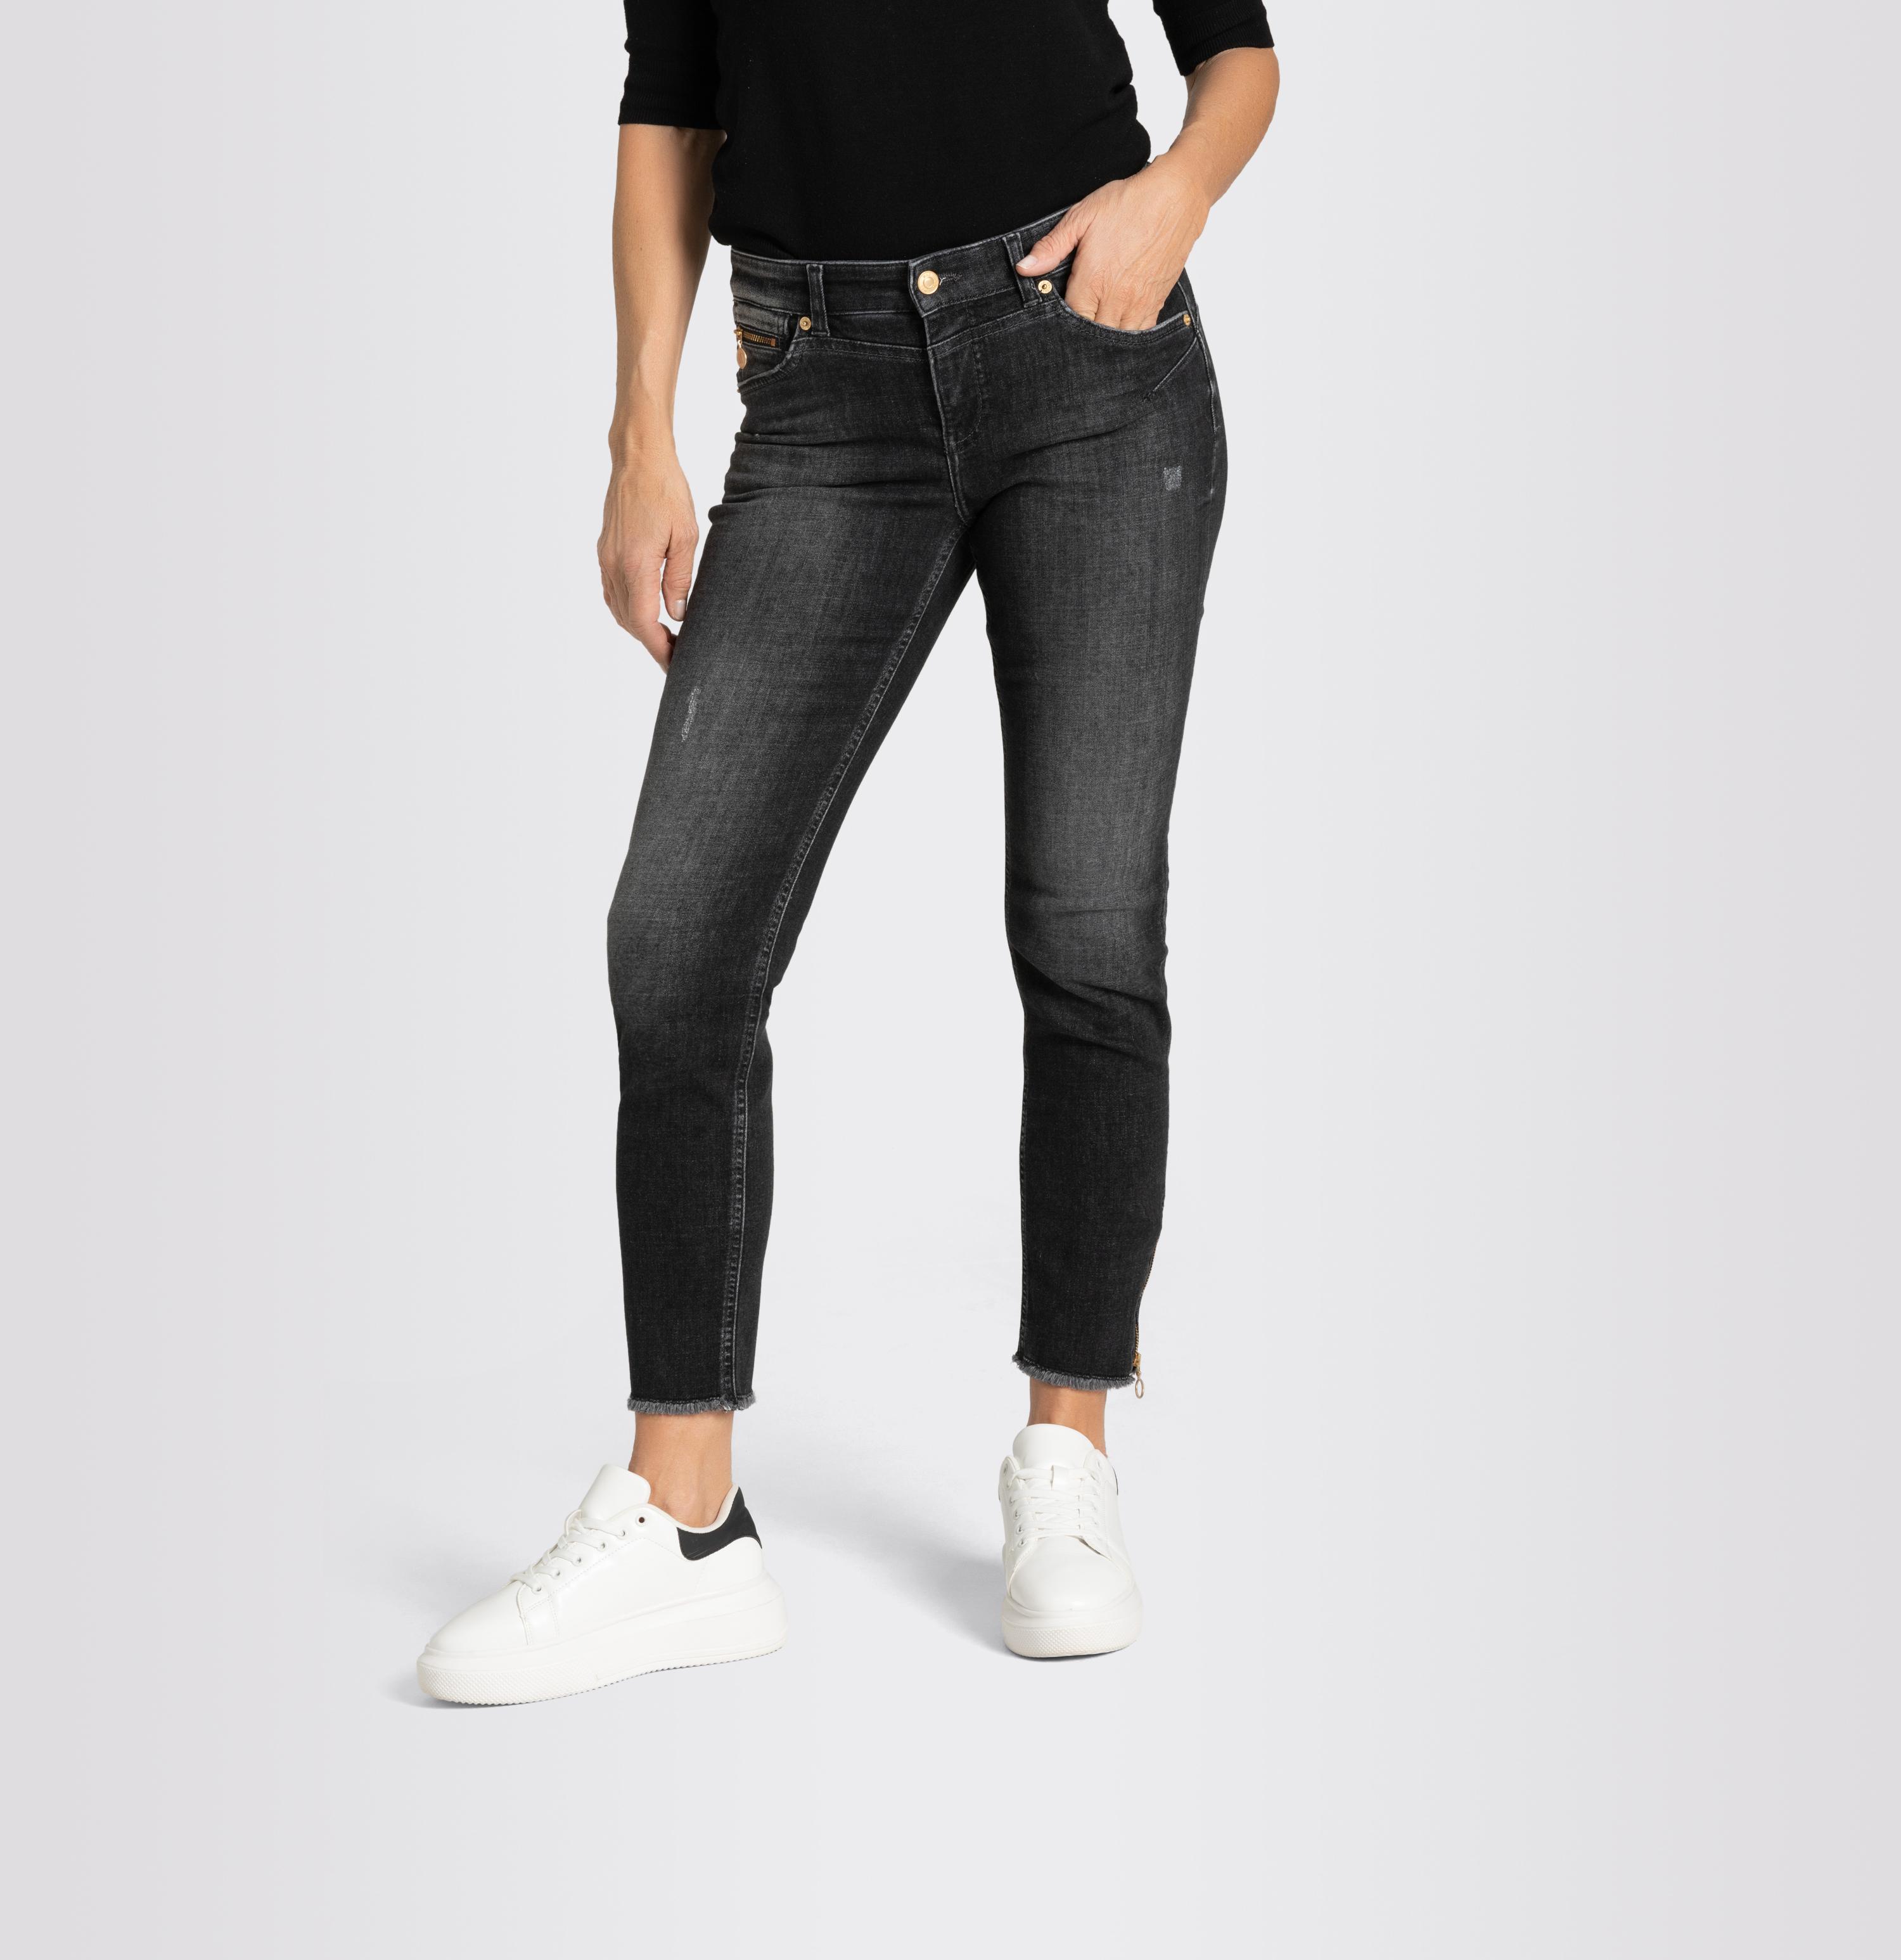 Shop MAC - Pants, | Jeans Women grey PT Light, D927 Rich Chic, Slim